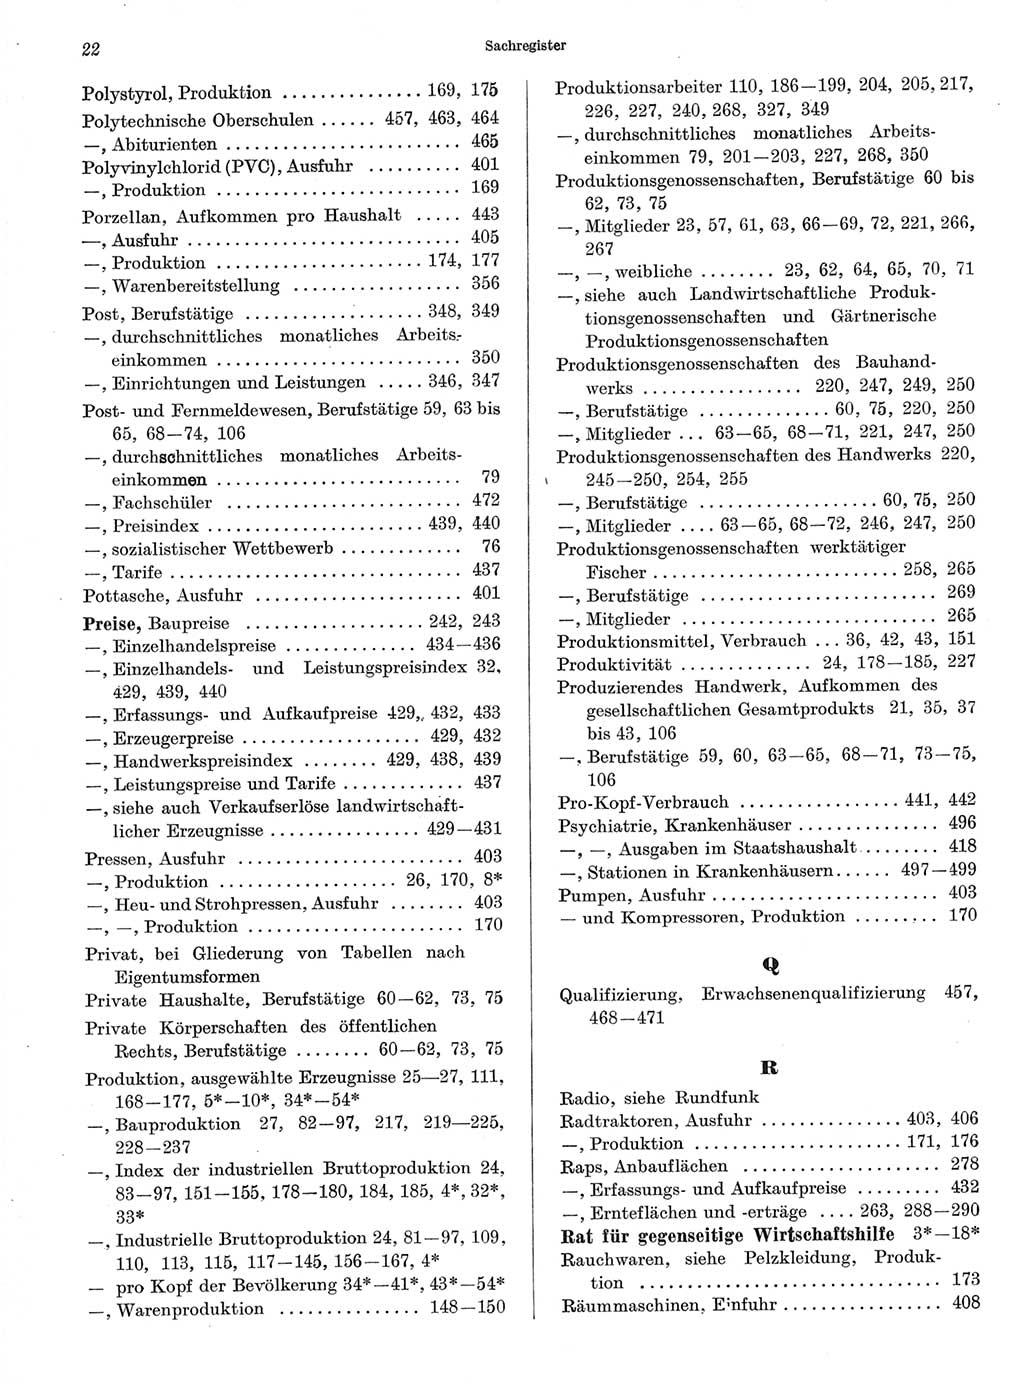 Statistisches Jahrbuch der Deutschen Demokratischen Republik (DDR) 1966, Seite 22 (Stat. Jb. DDR 1966, S. 22)